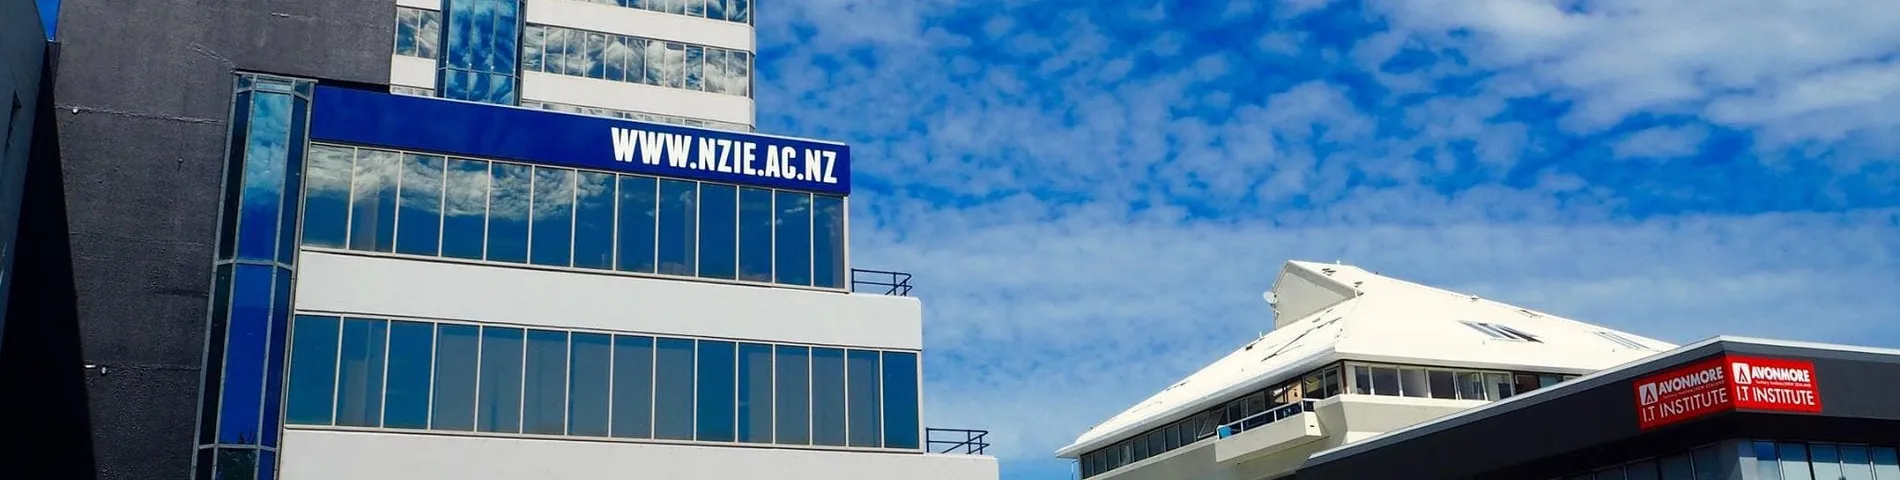 NZIE - New Zealand Institute of Education kuva 1